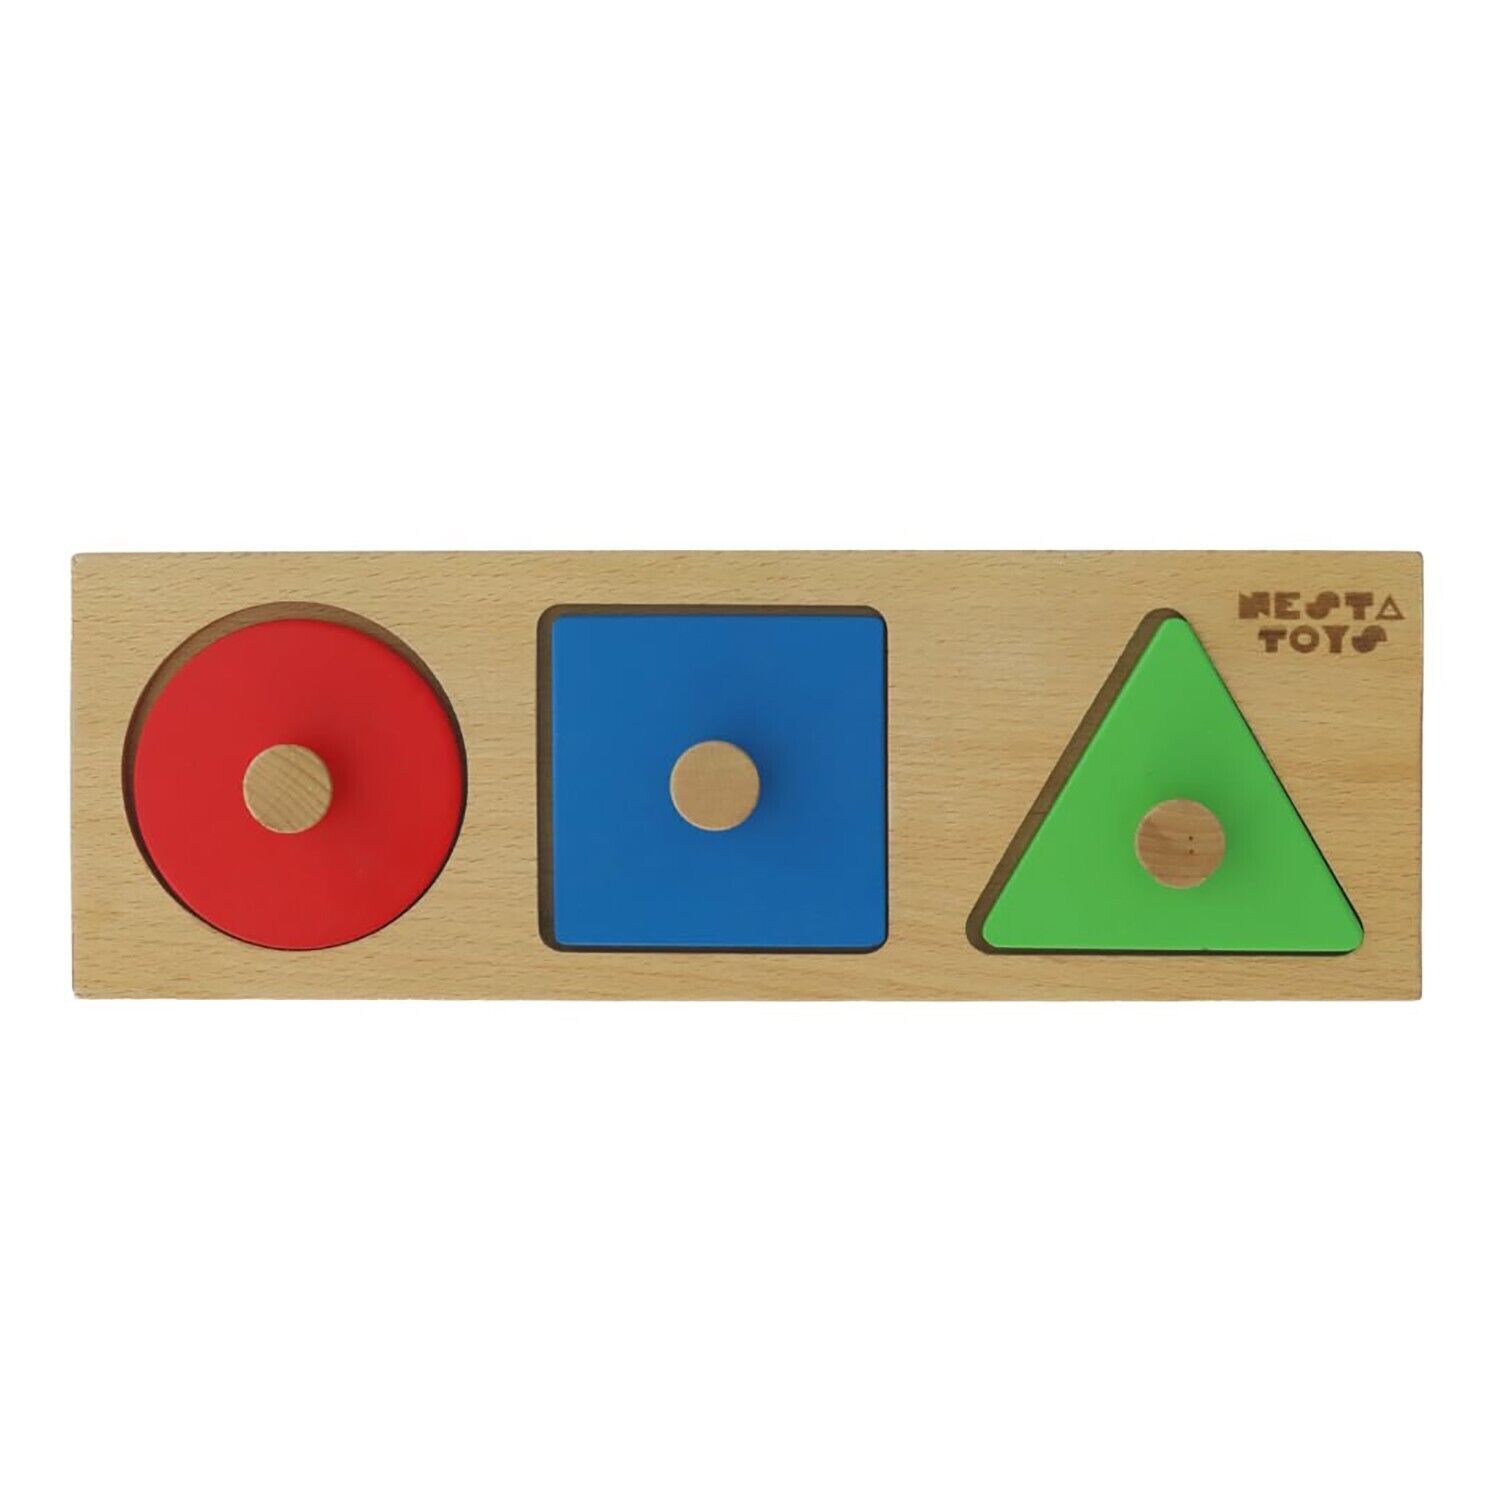 Image of NESTA TOYS Montessori Forme in Legno Jumbo Knob Puzzle | Primo set di puzzle